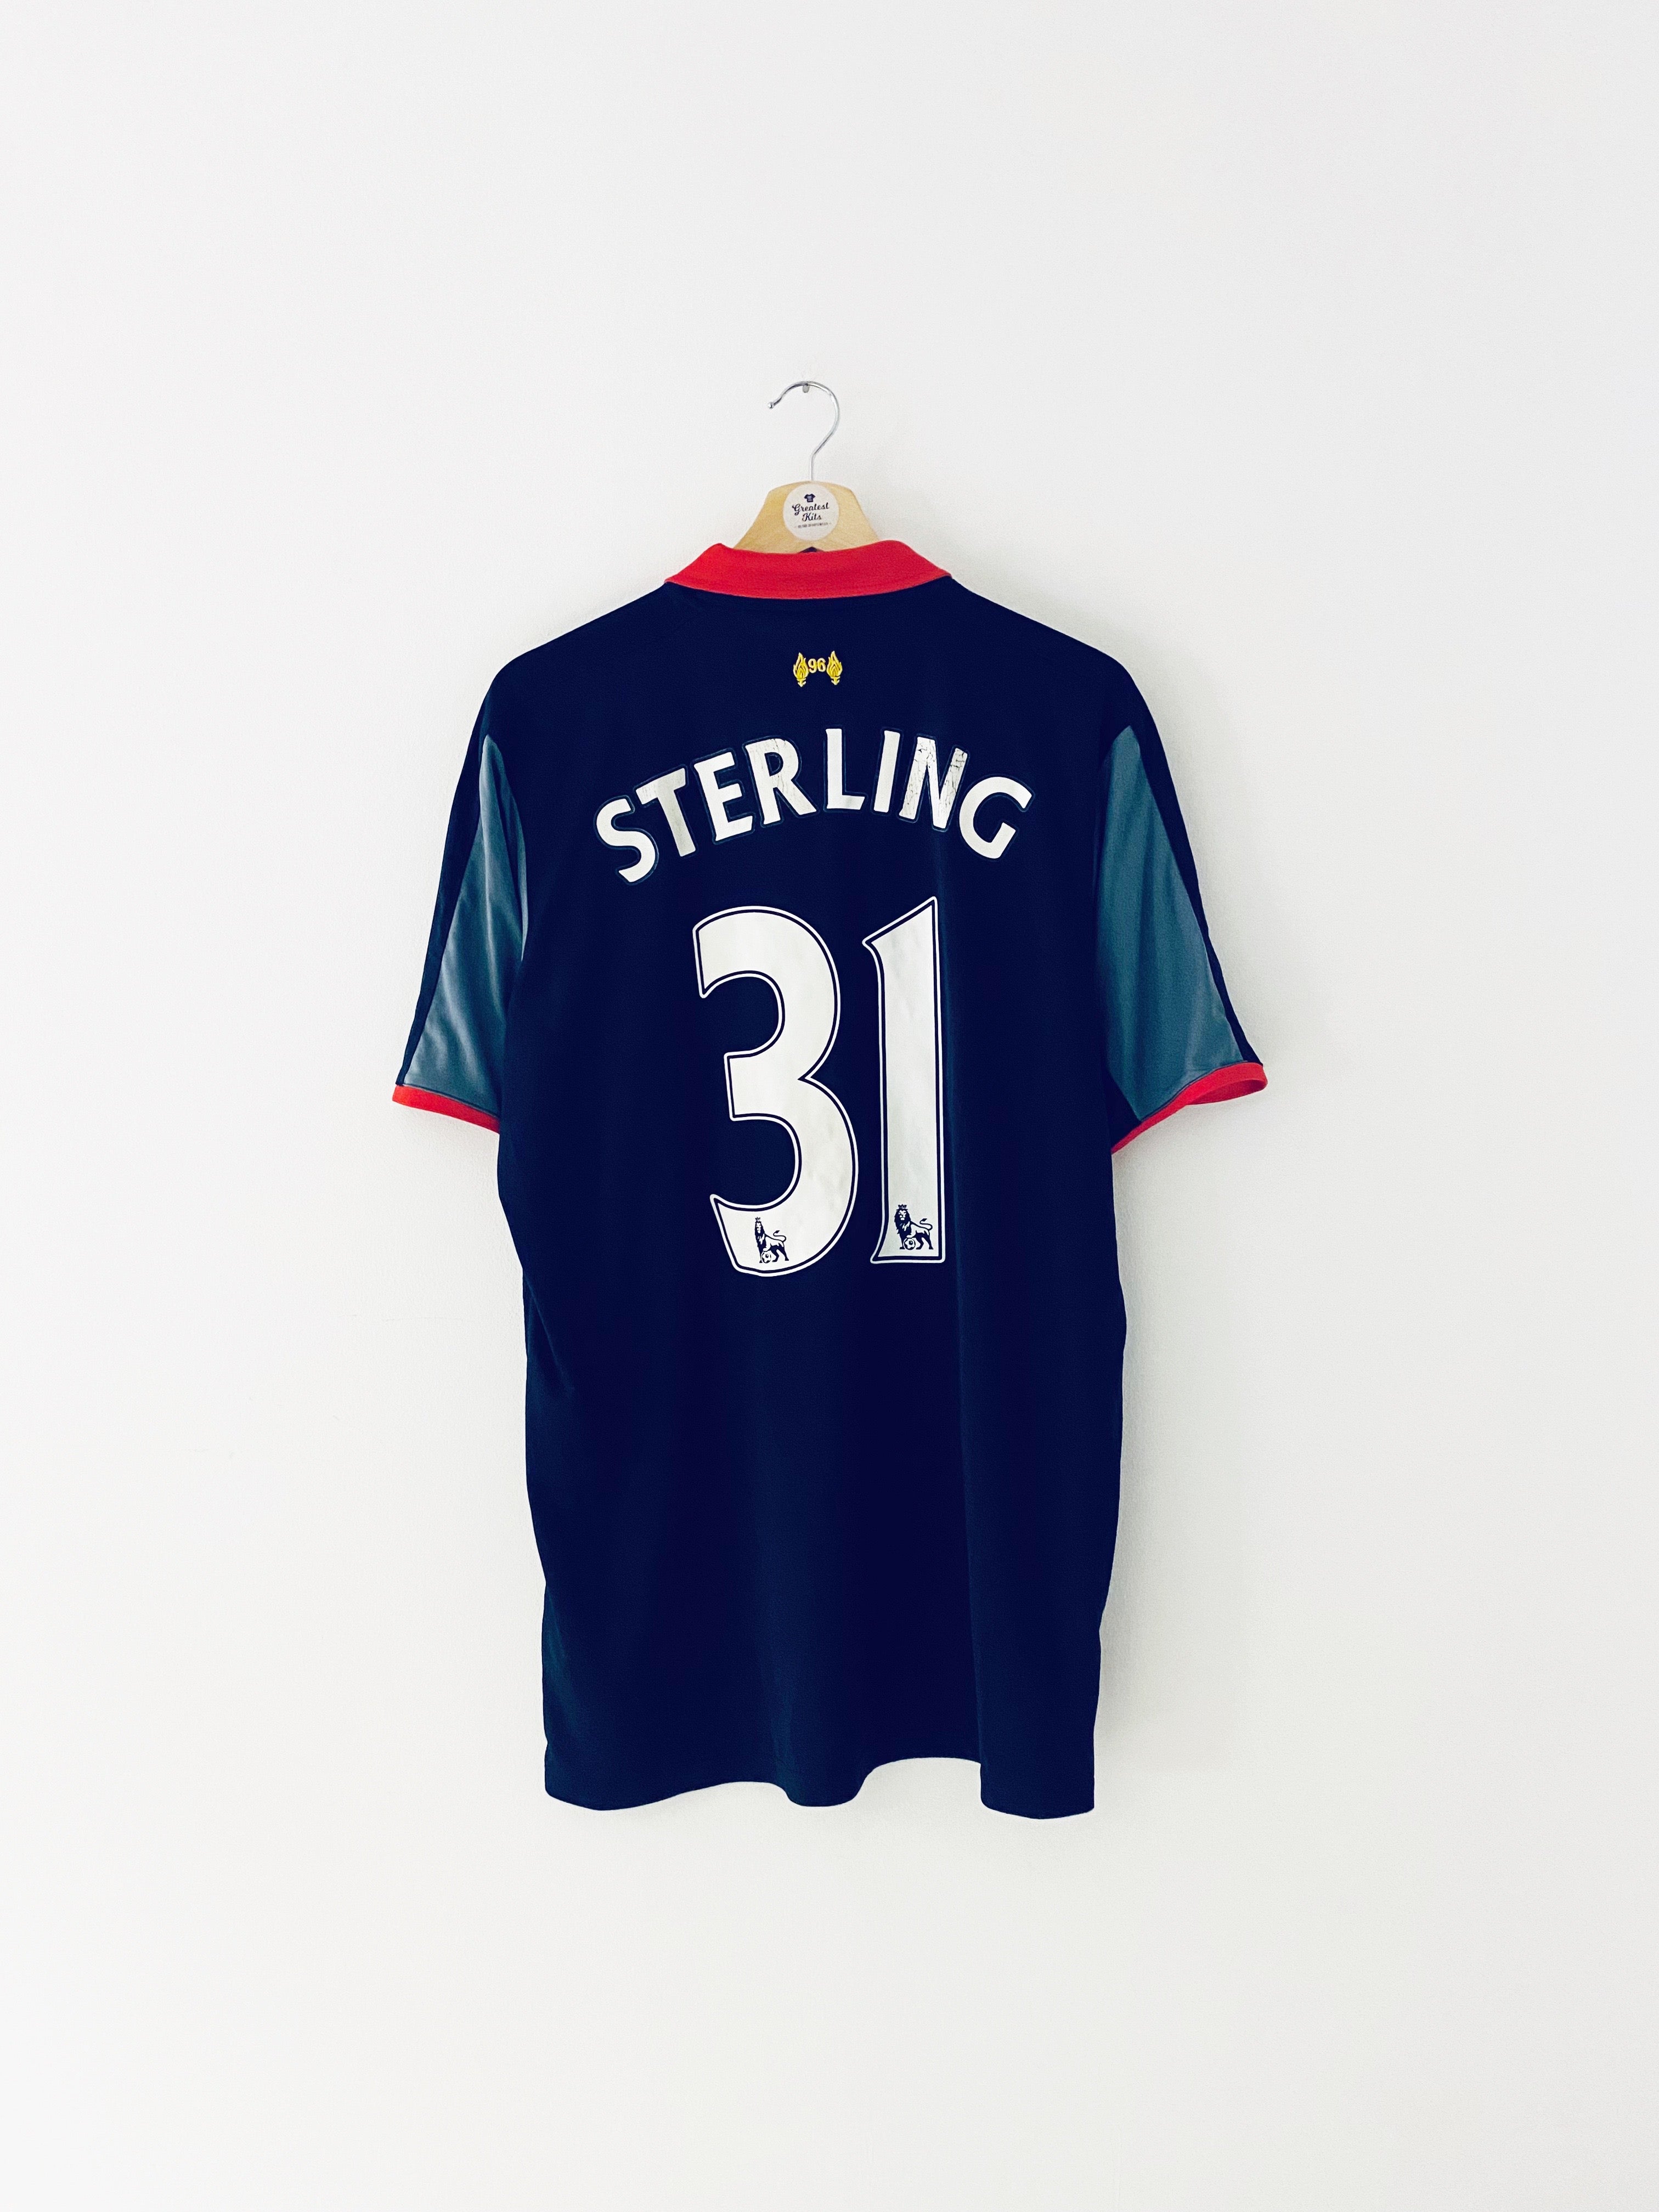 Troisième maillot de Liverpool 2014/15 Sterling #31 (XL) 7/10